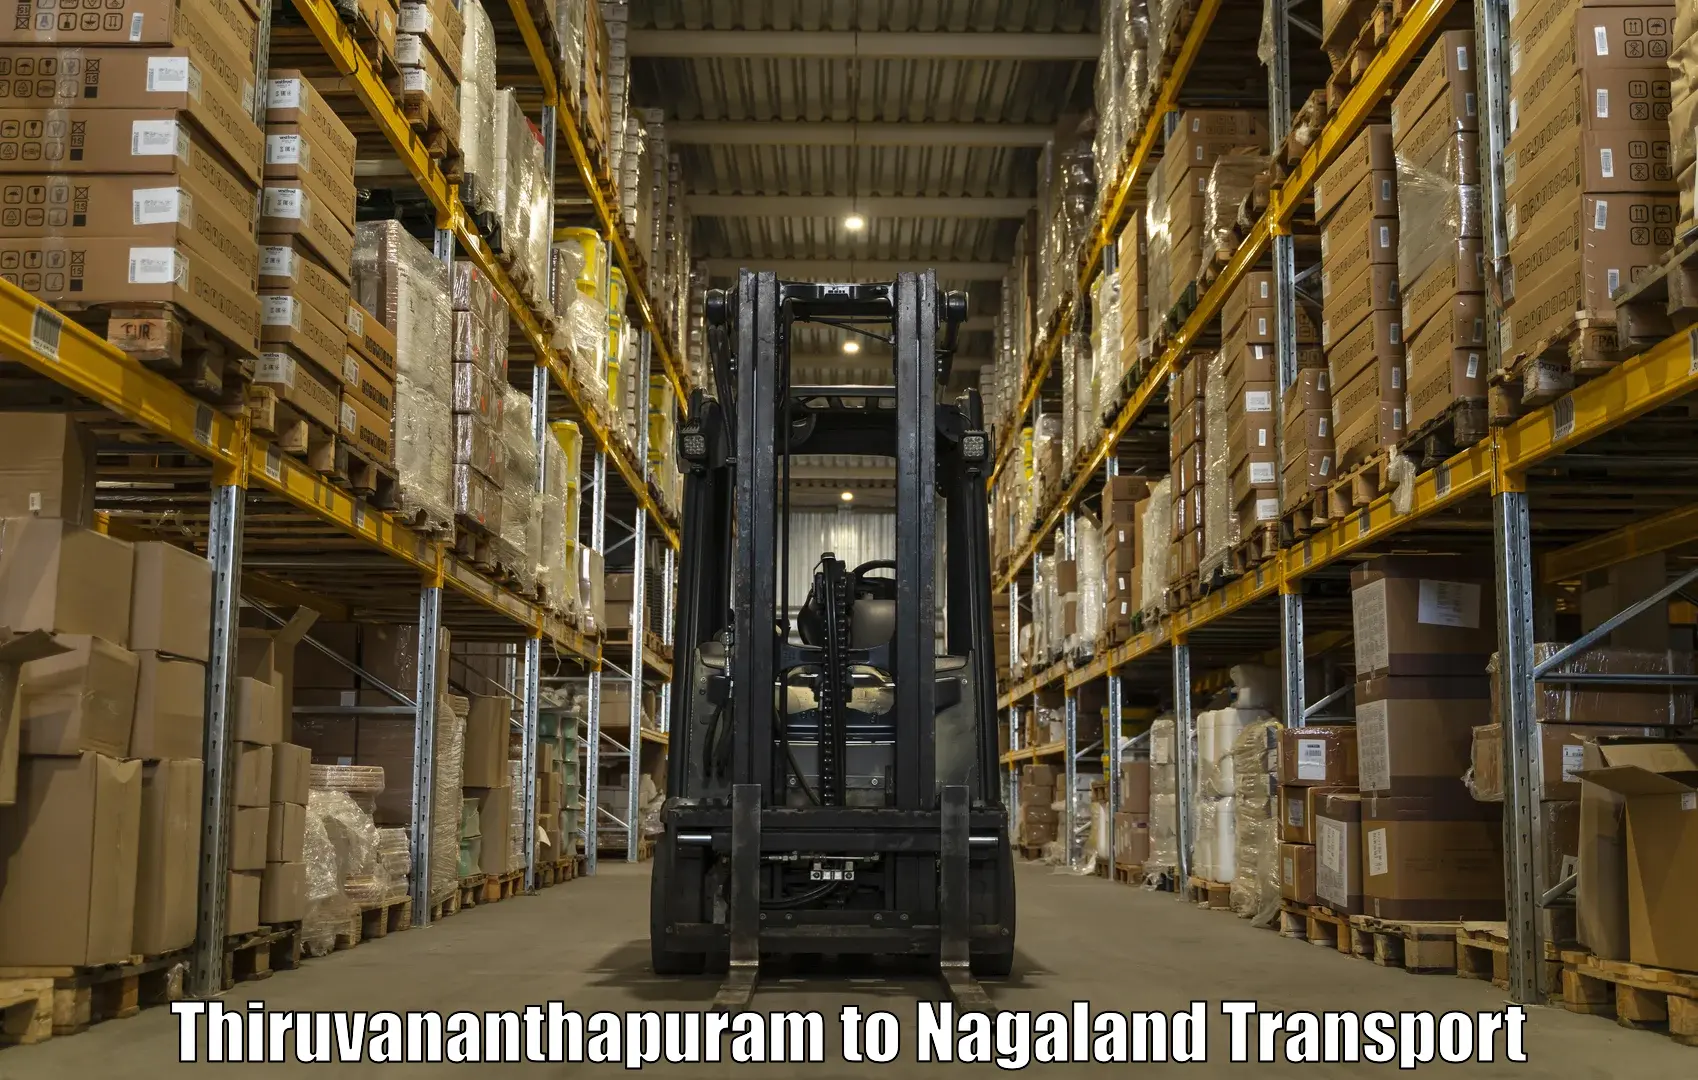 Furniture transport service Thiruvananthapuram to NIT Nagaland